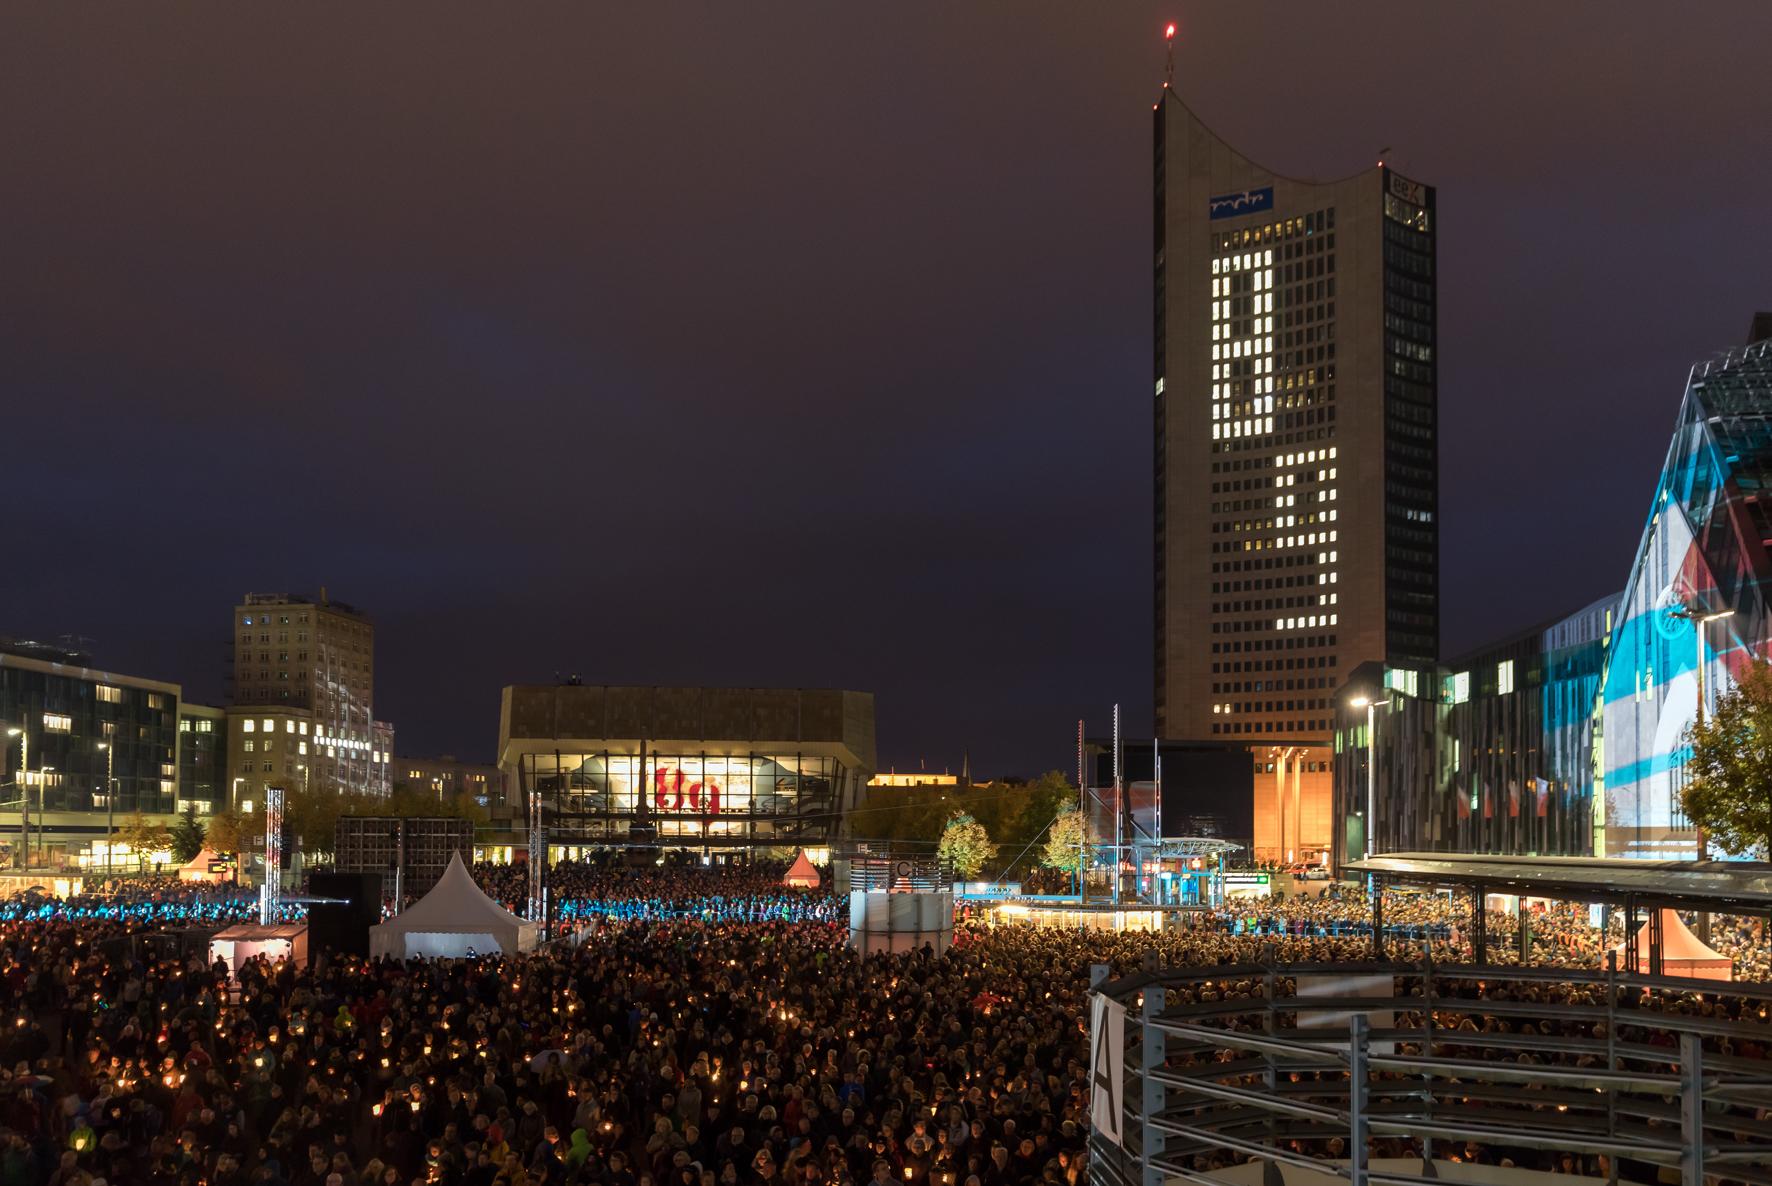 Mit dem Lichtfest erinnert Leipzig alljährlich am 9. Oktober an die Friedliche Revolution. ©Punctum/Alexander Schmidt